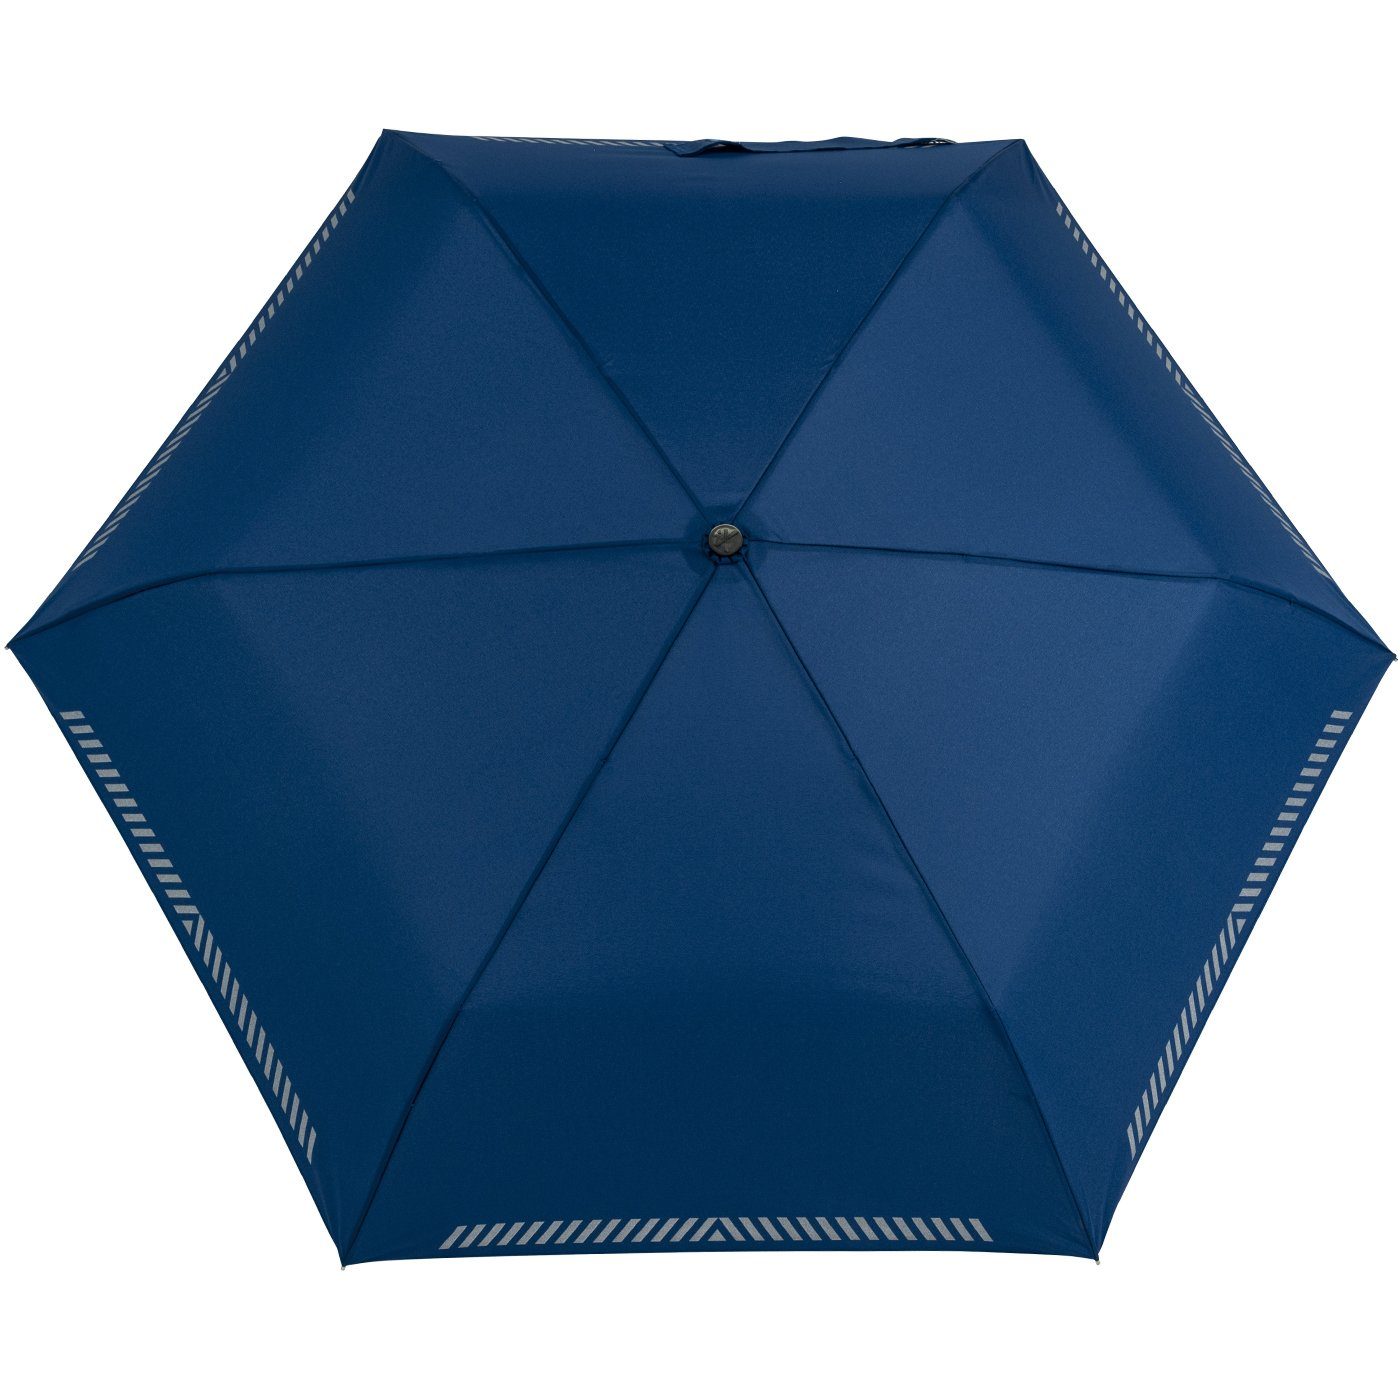 blau iX-brella Safety Taschenregenschirm Kinderschirm Mini reflektierend extra leicht, Reflex